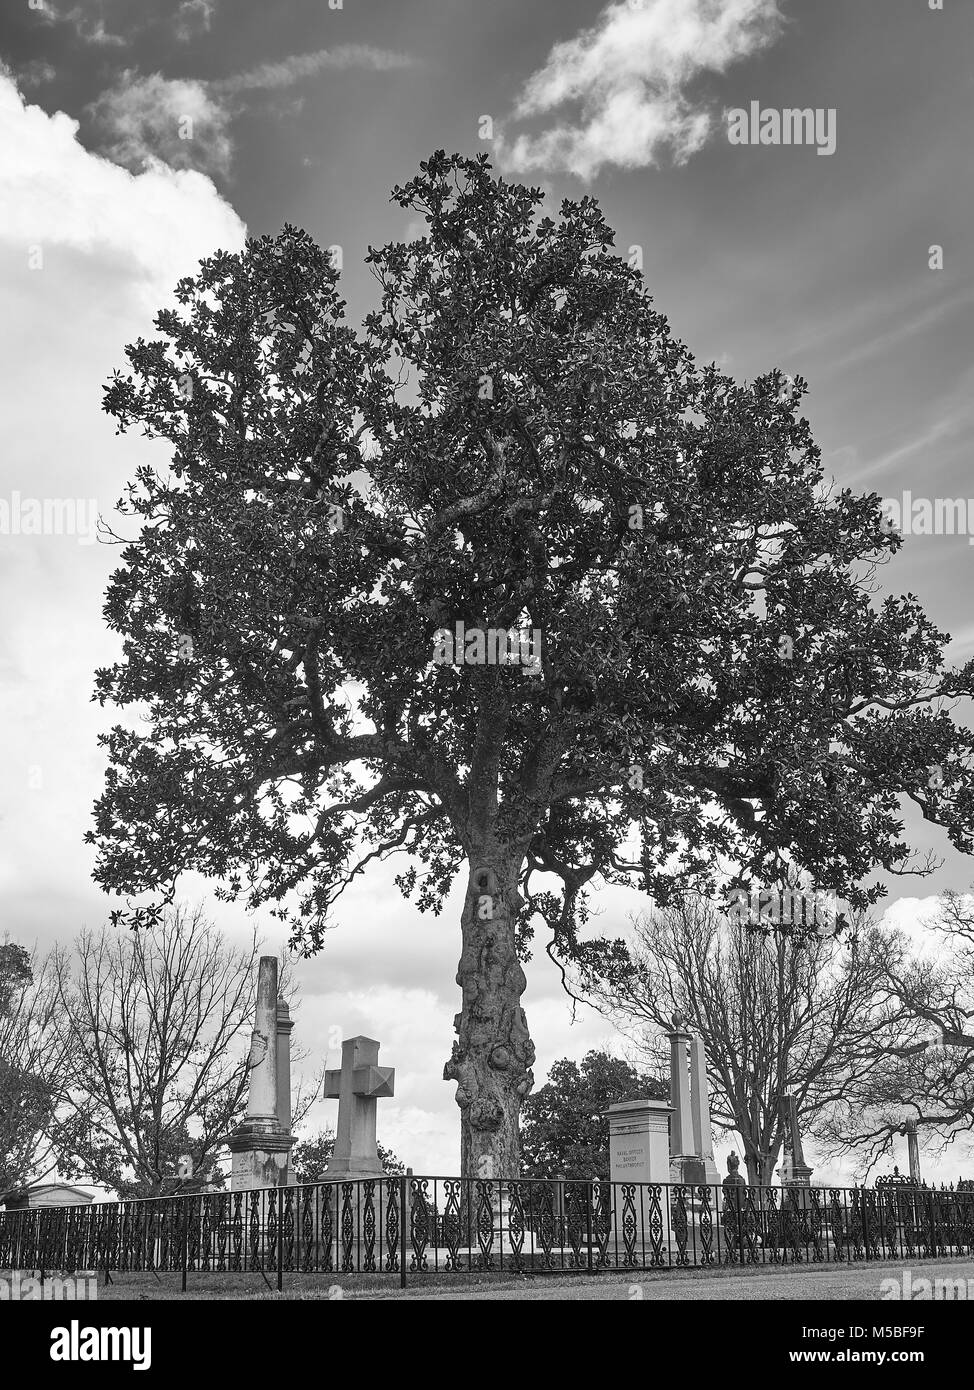 Vieux cimetière Oakwood avec stèles, pierres tombales et monuments créé au début des années 1800, pour toutes les religions à Montgomery, Alabama, USA. Banque D'Images